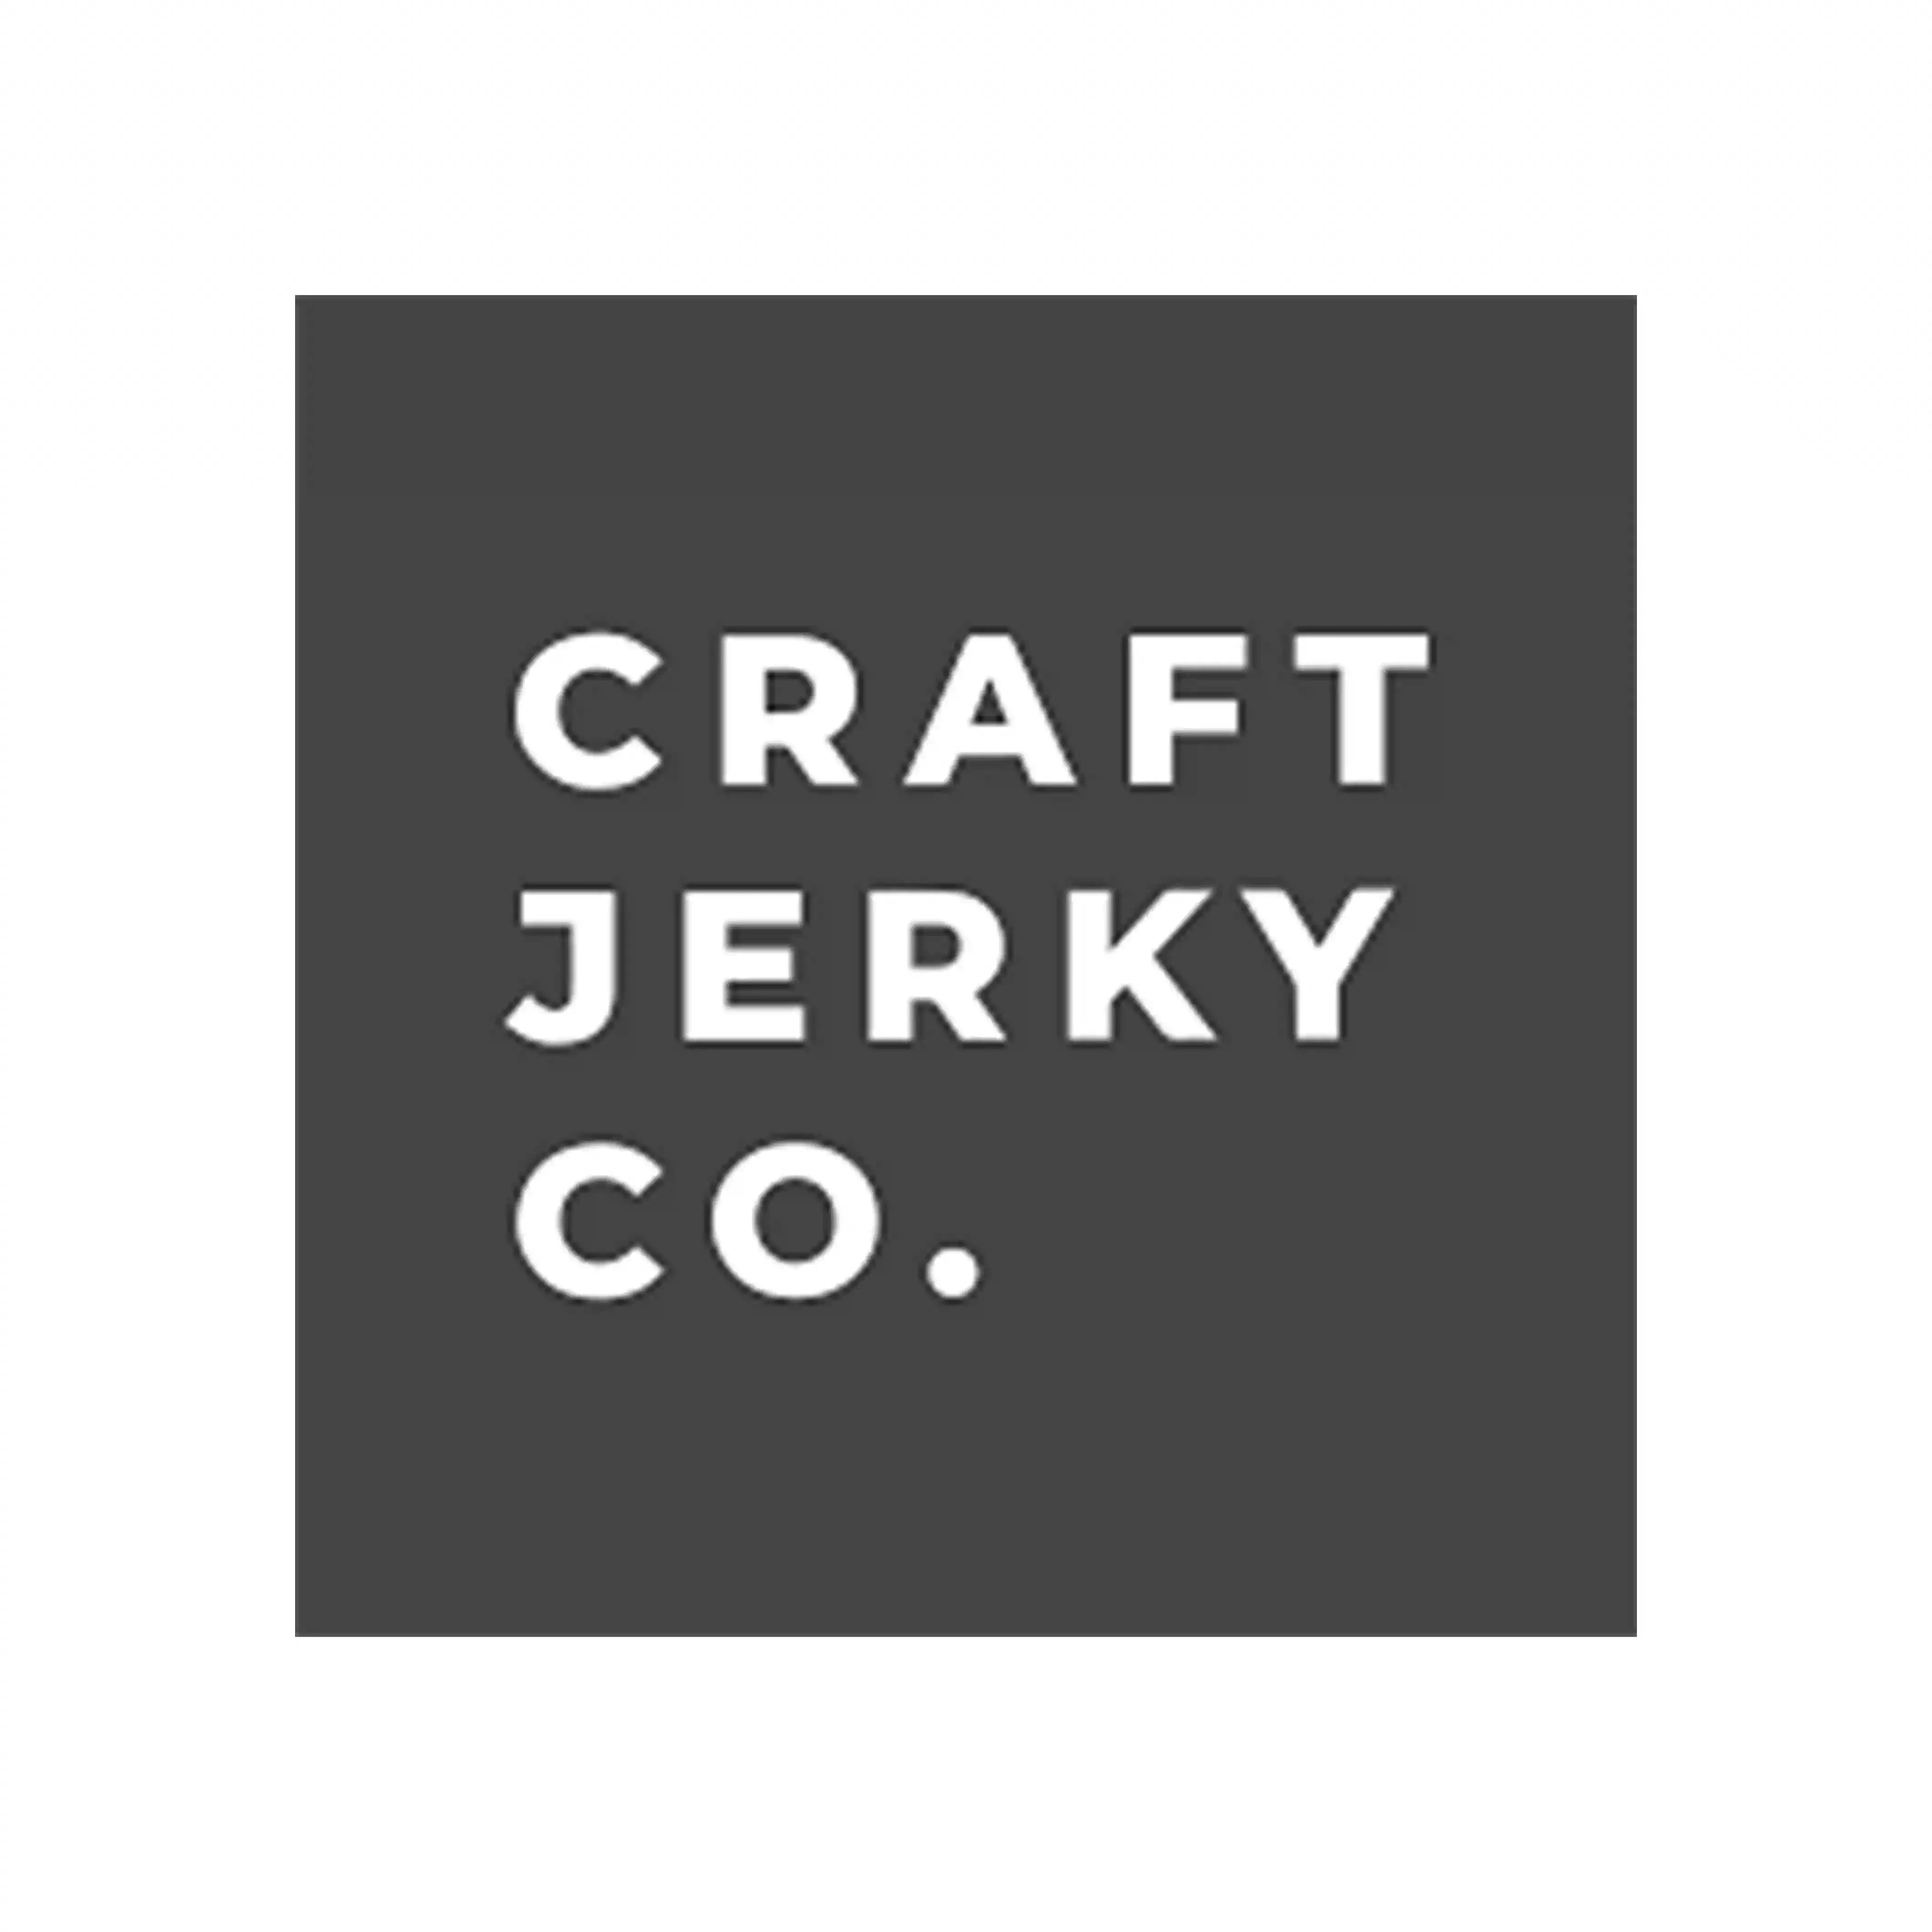 Craft Jerky Co